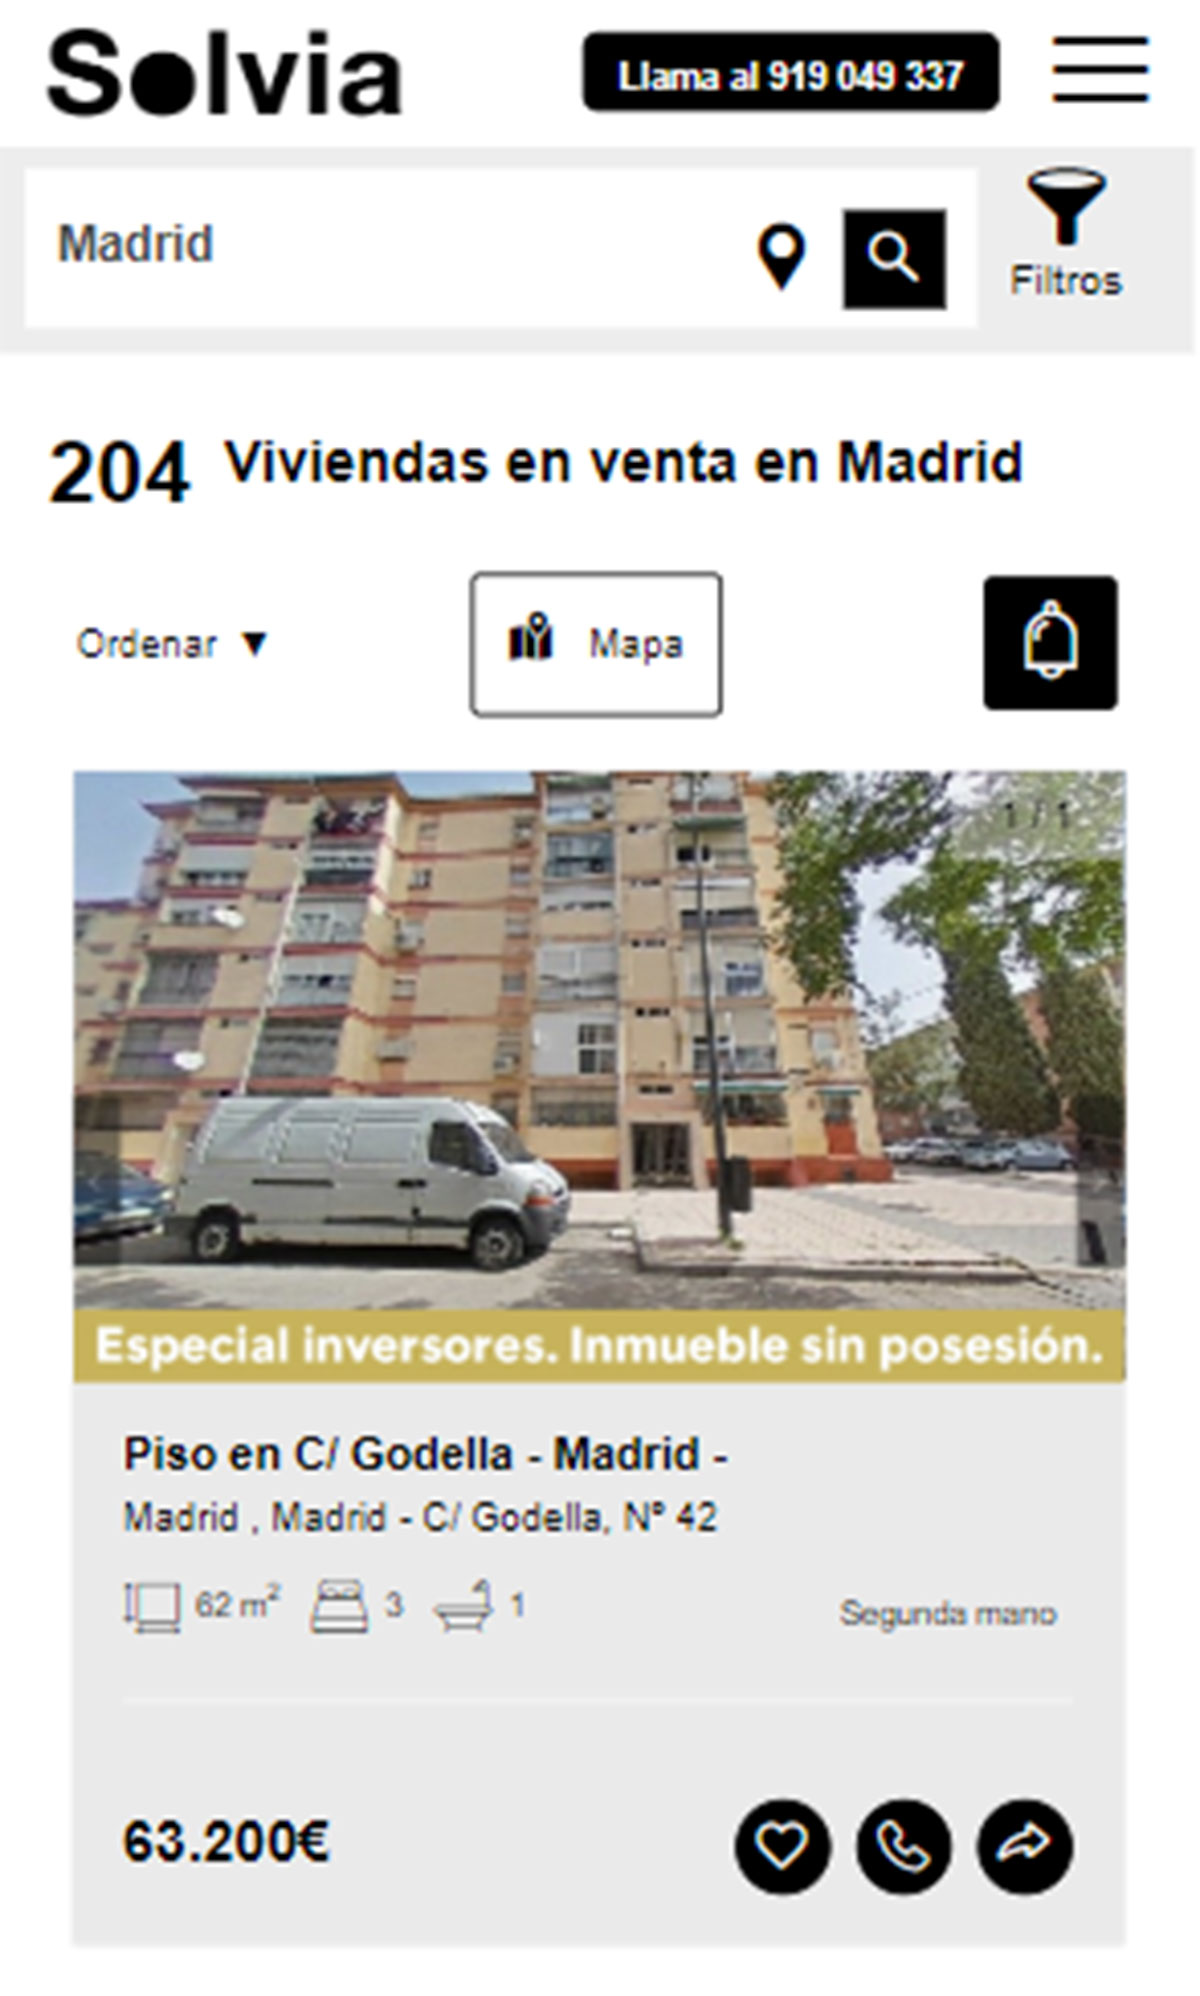 Piso en la ciudad de Madrid por 63.200 euros